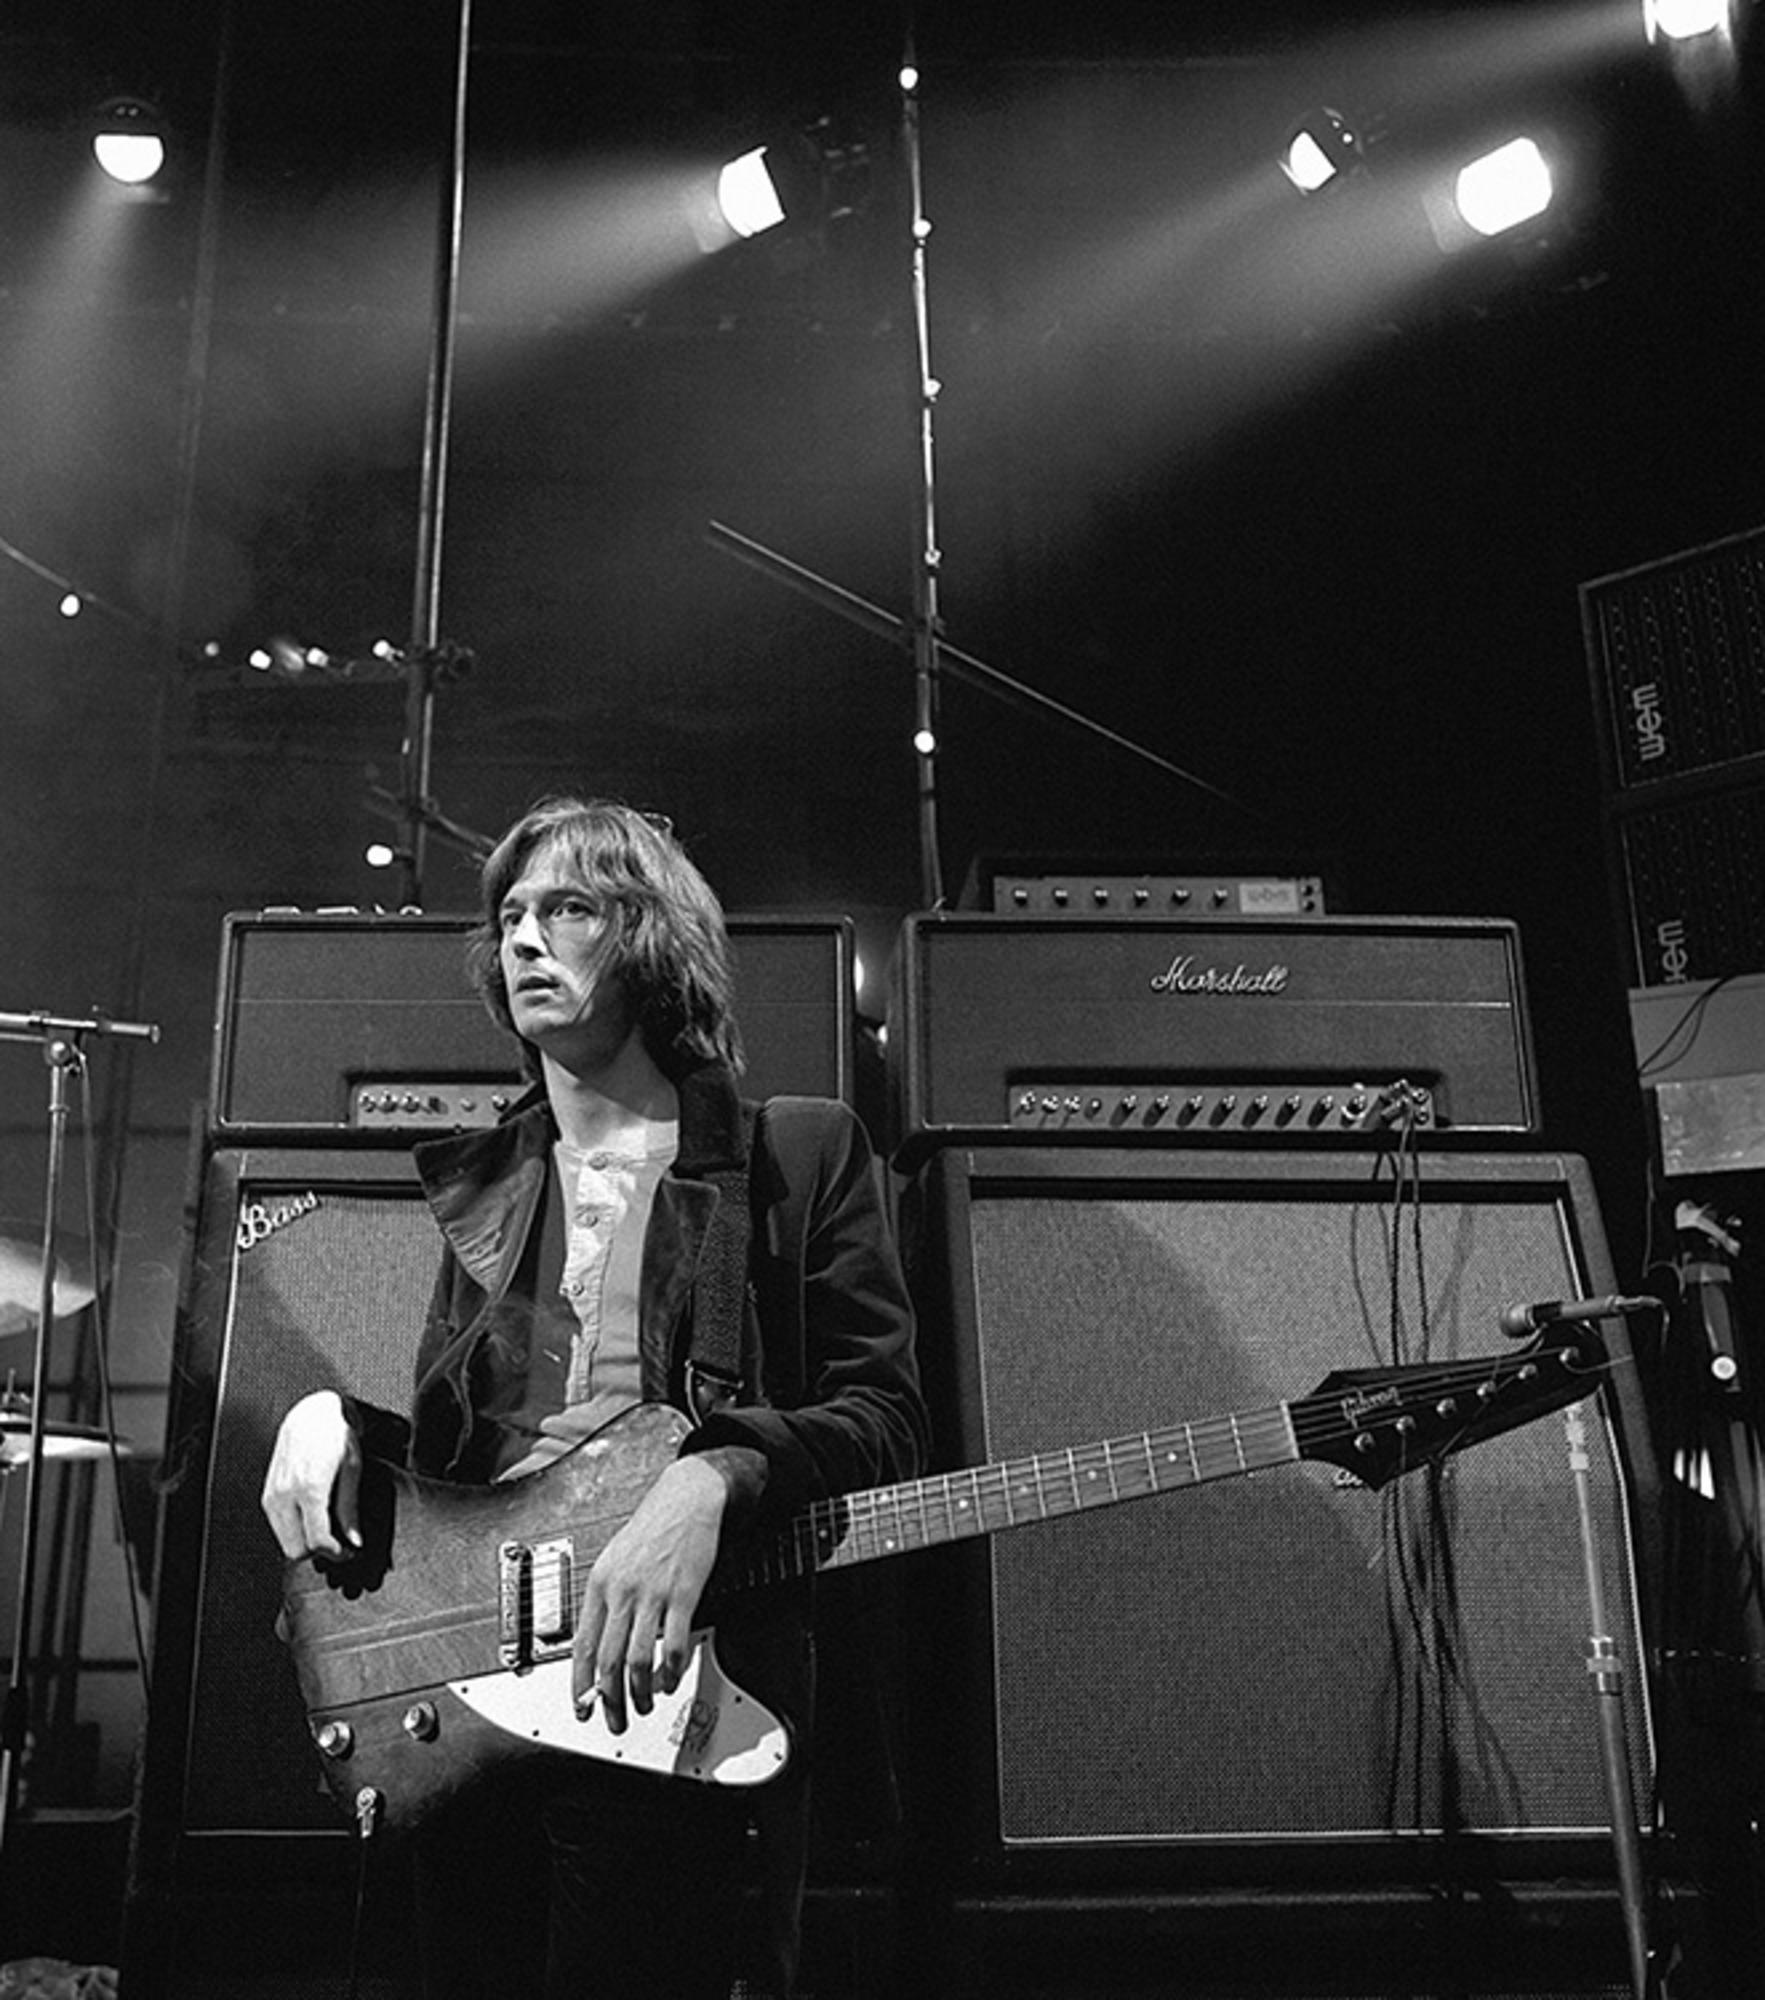 Gélatine argentique, signée et numérotée

Eric Clapton, photographié à Londres en 1969.

Tailles disponibles :
16" x 20" Edition de 50
20" x 24" Edition de 50
30" x 40" Edition de 25
50" x 53" Édition de 24

Cette photographie sera imprimée une fois